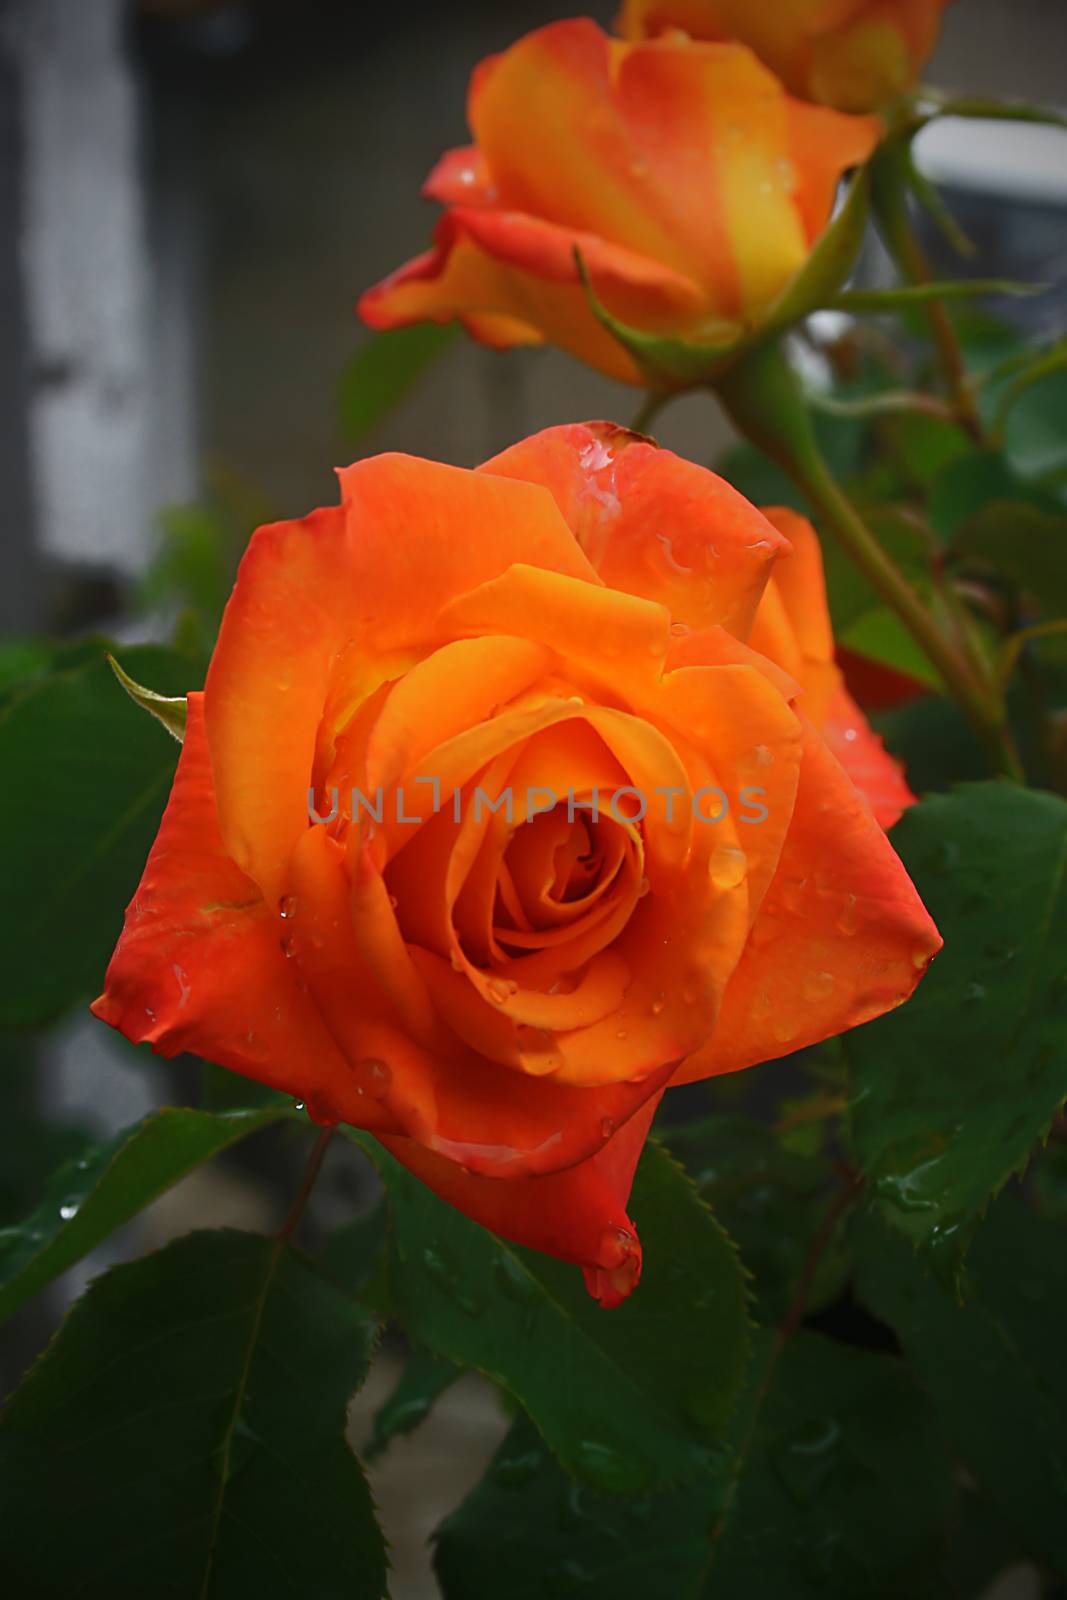 Orange rose in a summer garden close-up